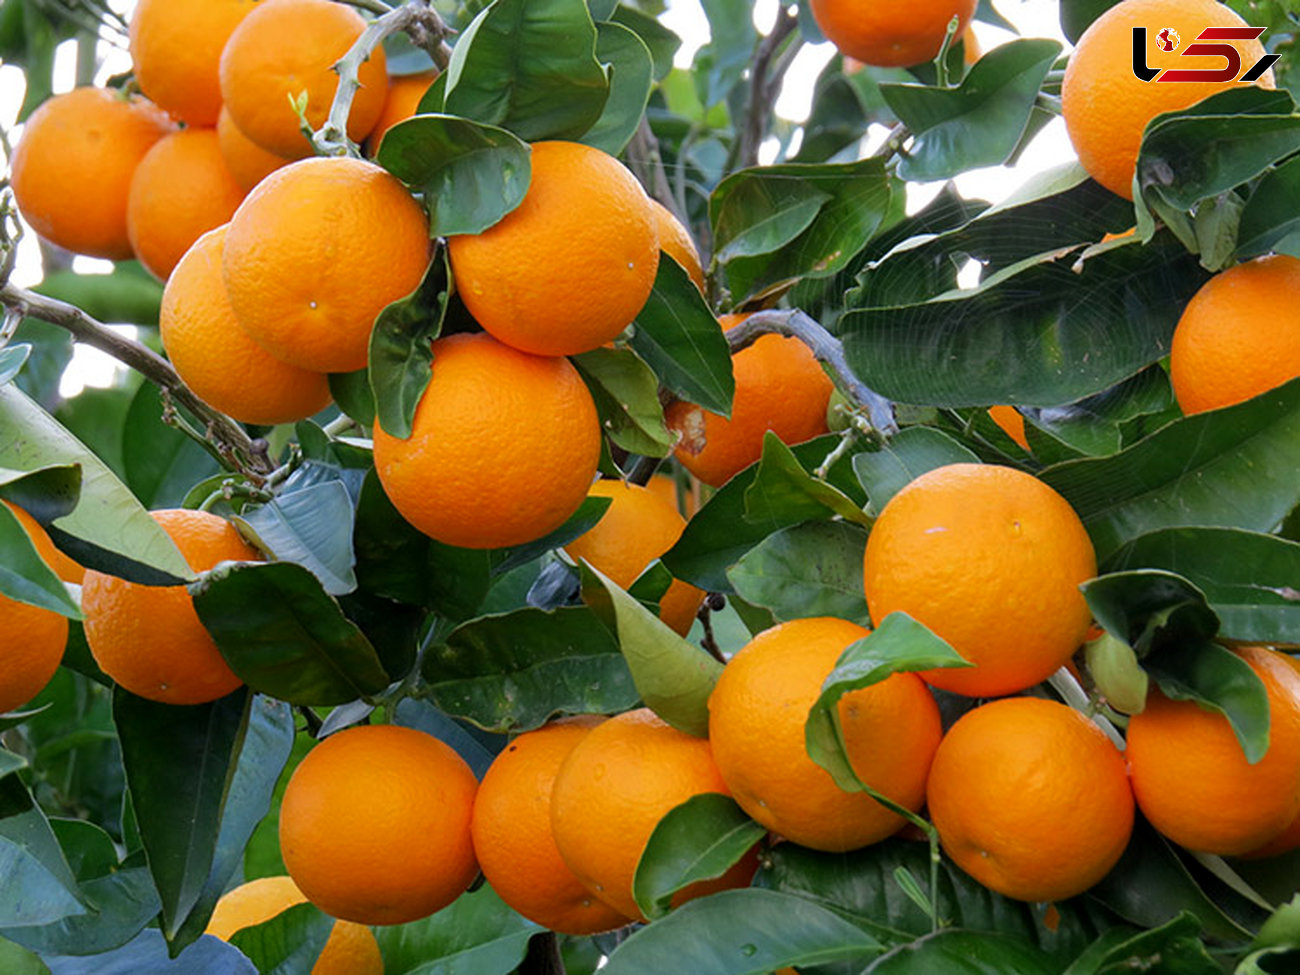 آغاز صادرات پرتقال از ۱۵ روز دیگر